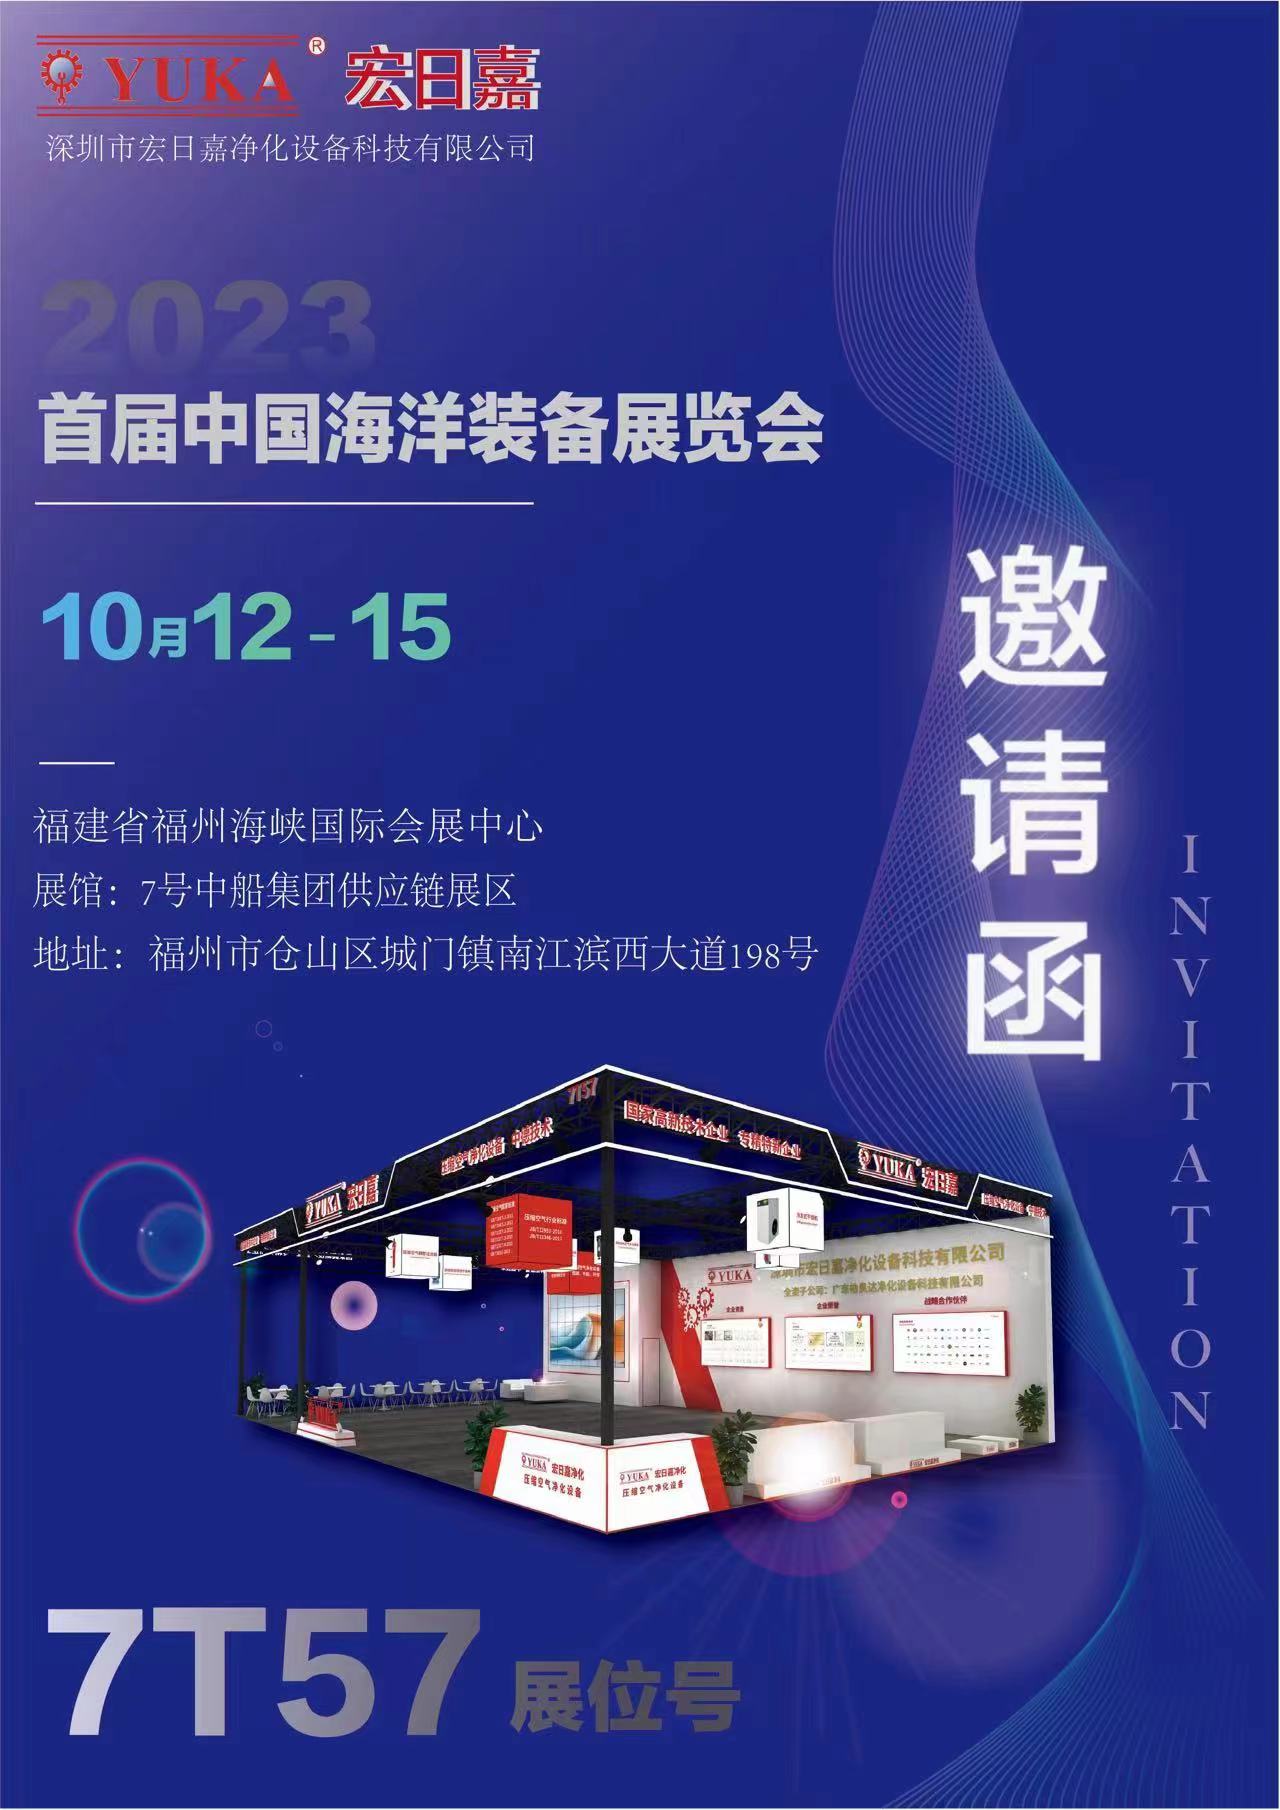 中国海洋装备博览会 7号中船集团供应链展区 7T57展位